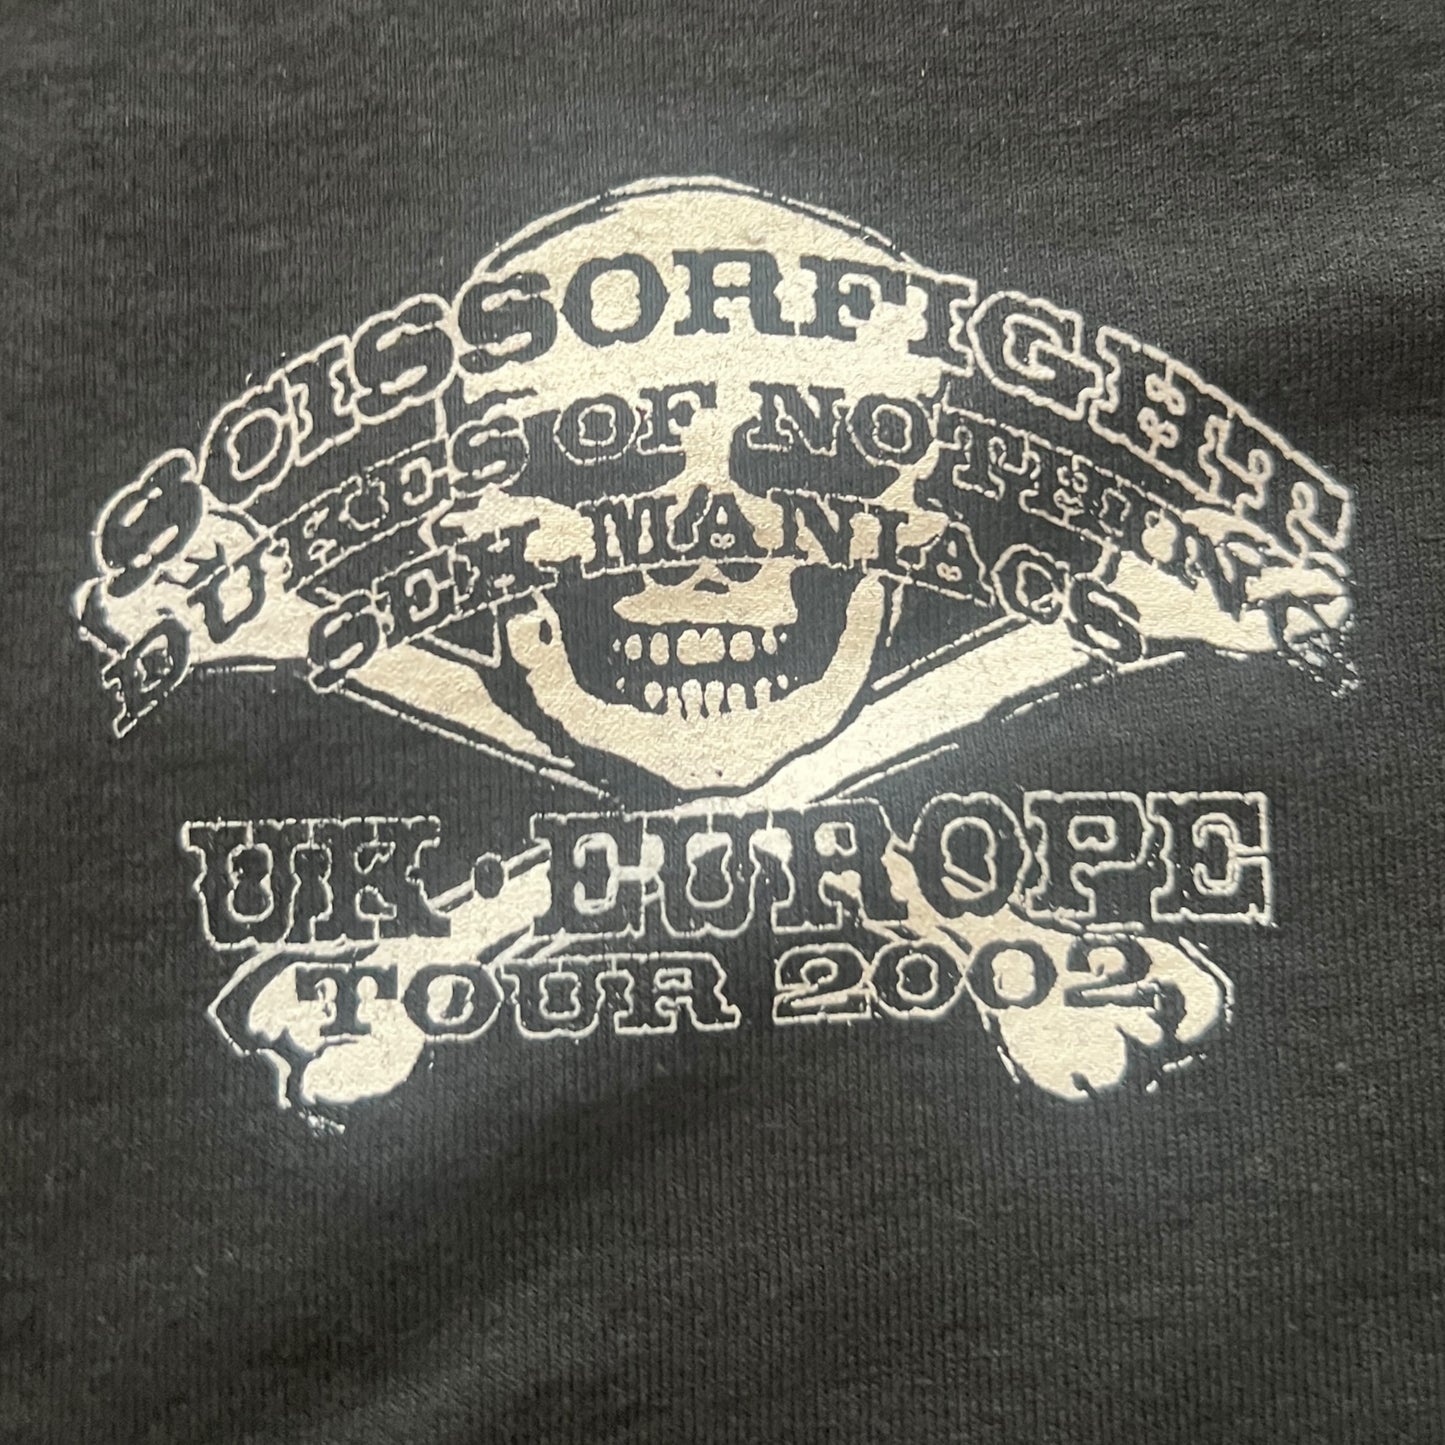 Scissorfight Band UK / Europe 2002 Tour T-Shirt Size Large